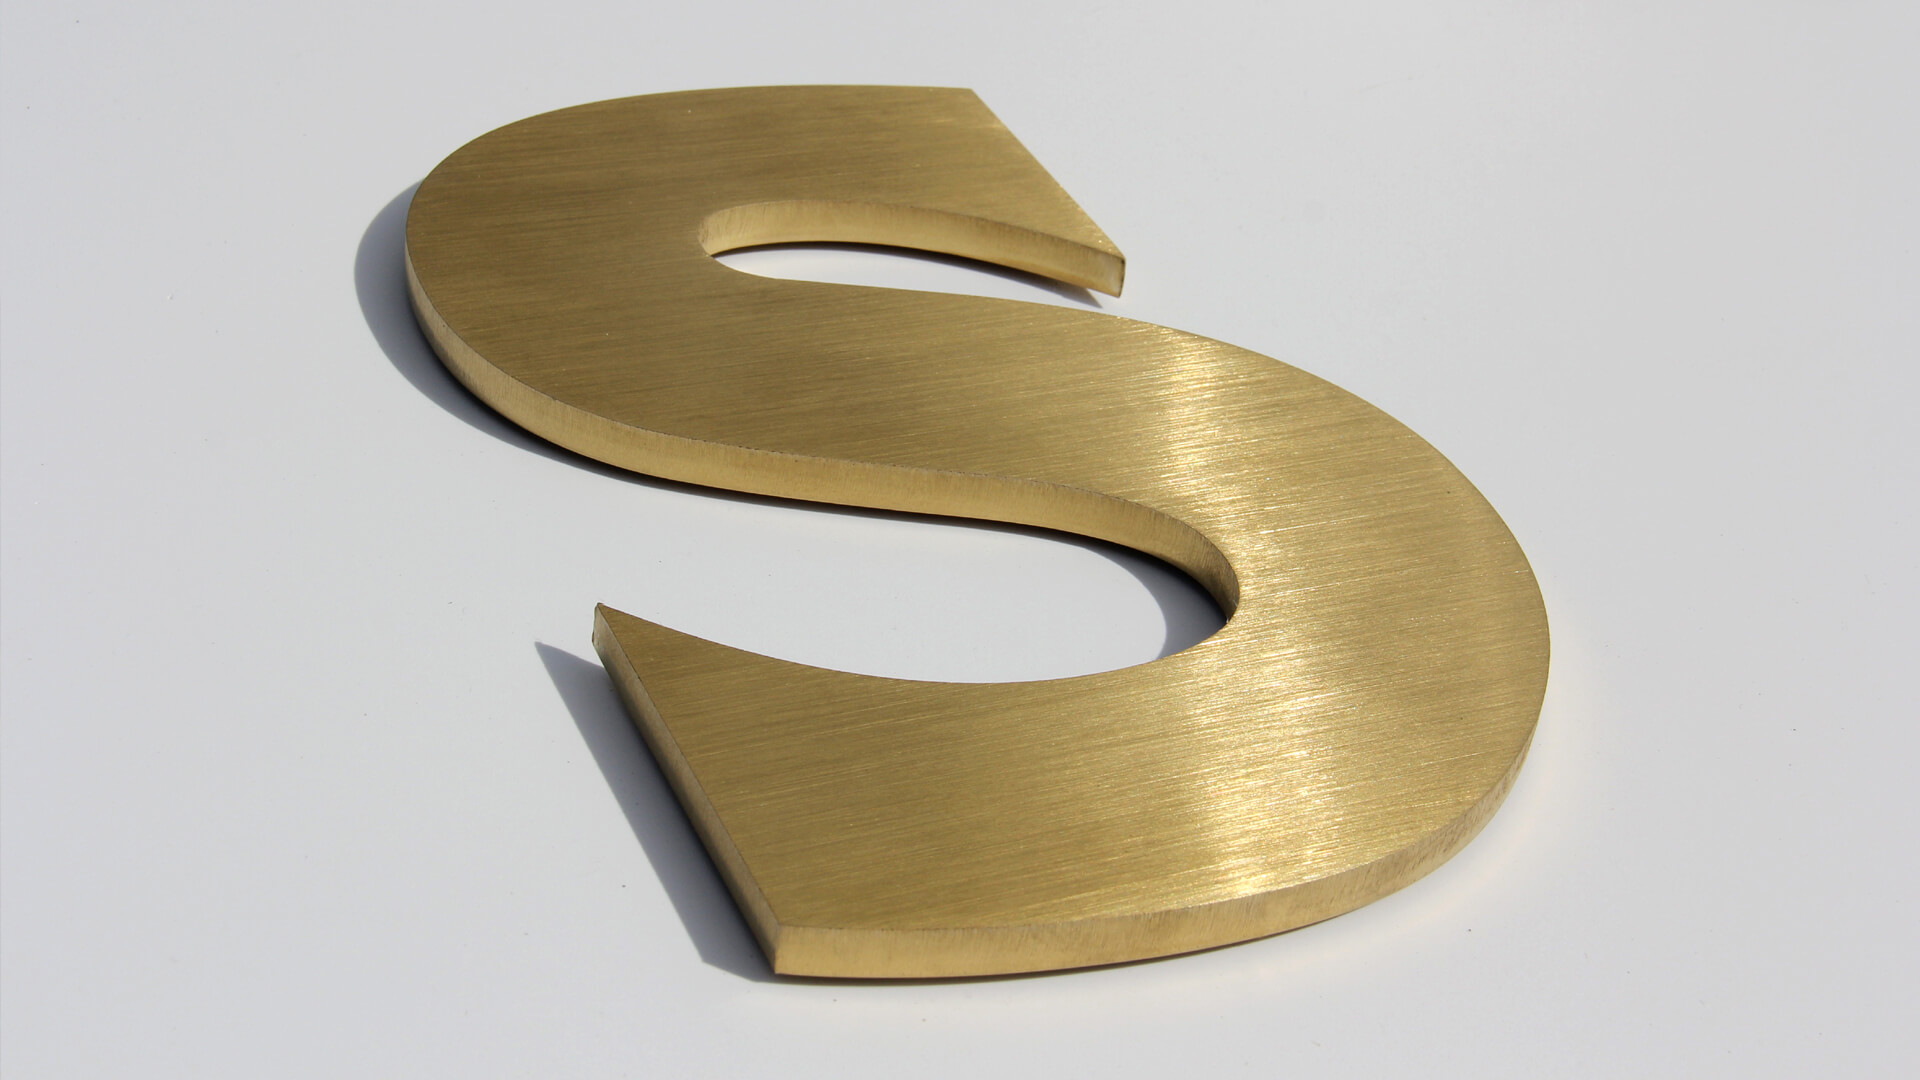 Złota litera S - Metalowa litera S w kolorze złotym, styl industrialny.